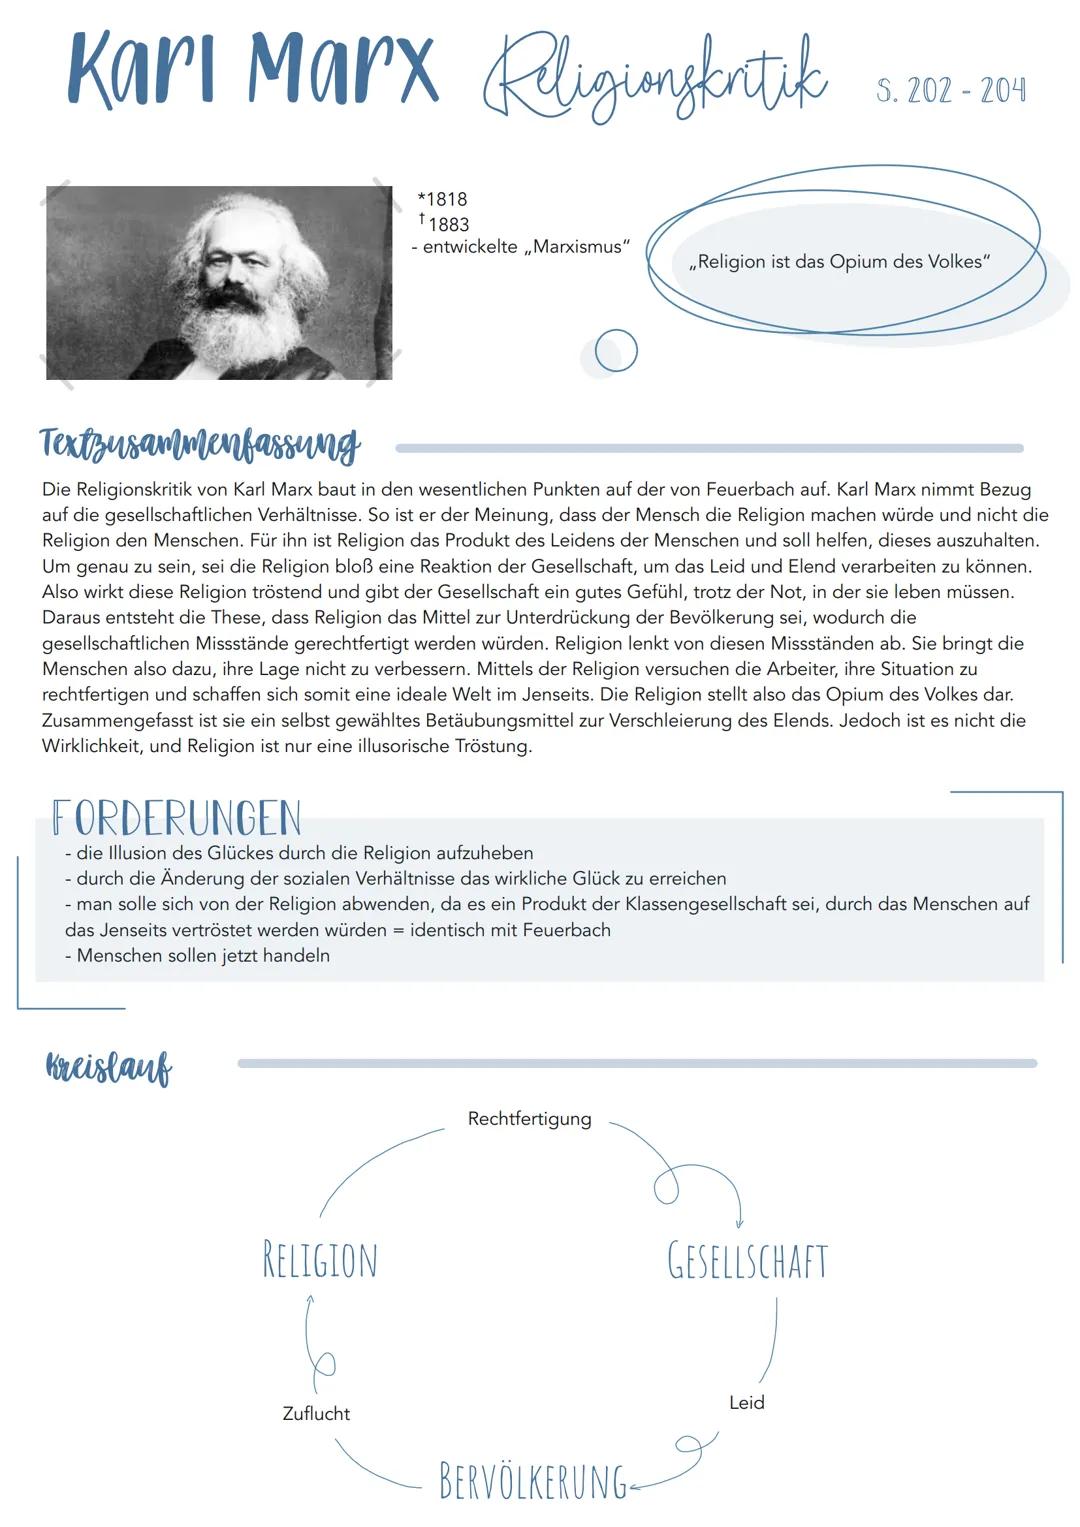 Karl Marx Religionsfintik
Kreislauf
*1818
†1883
- entwickelte ,,Marxismus"
Textzusammenfassung
Die Religionskritik von Karl Marx baut in den